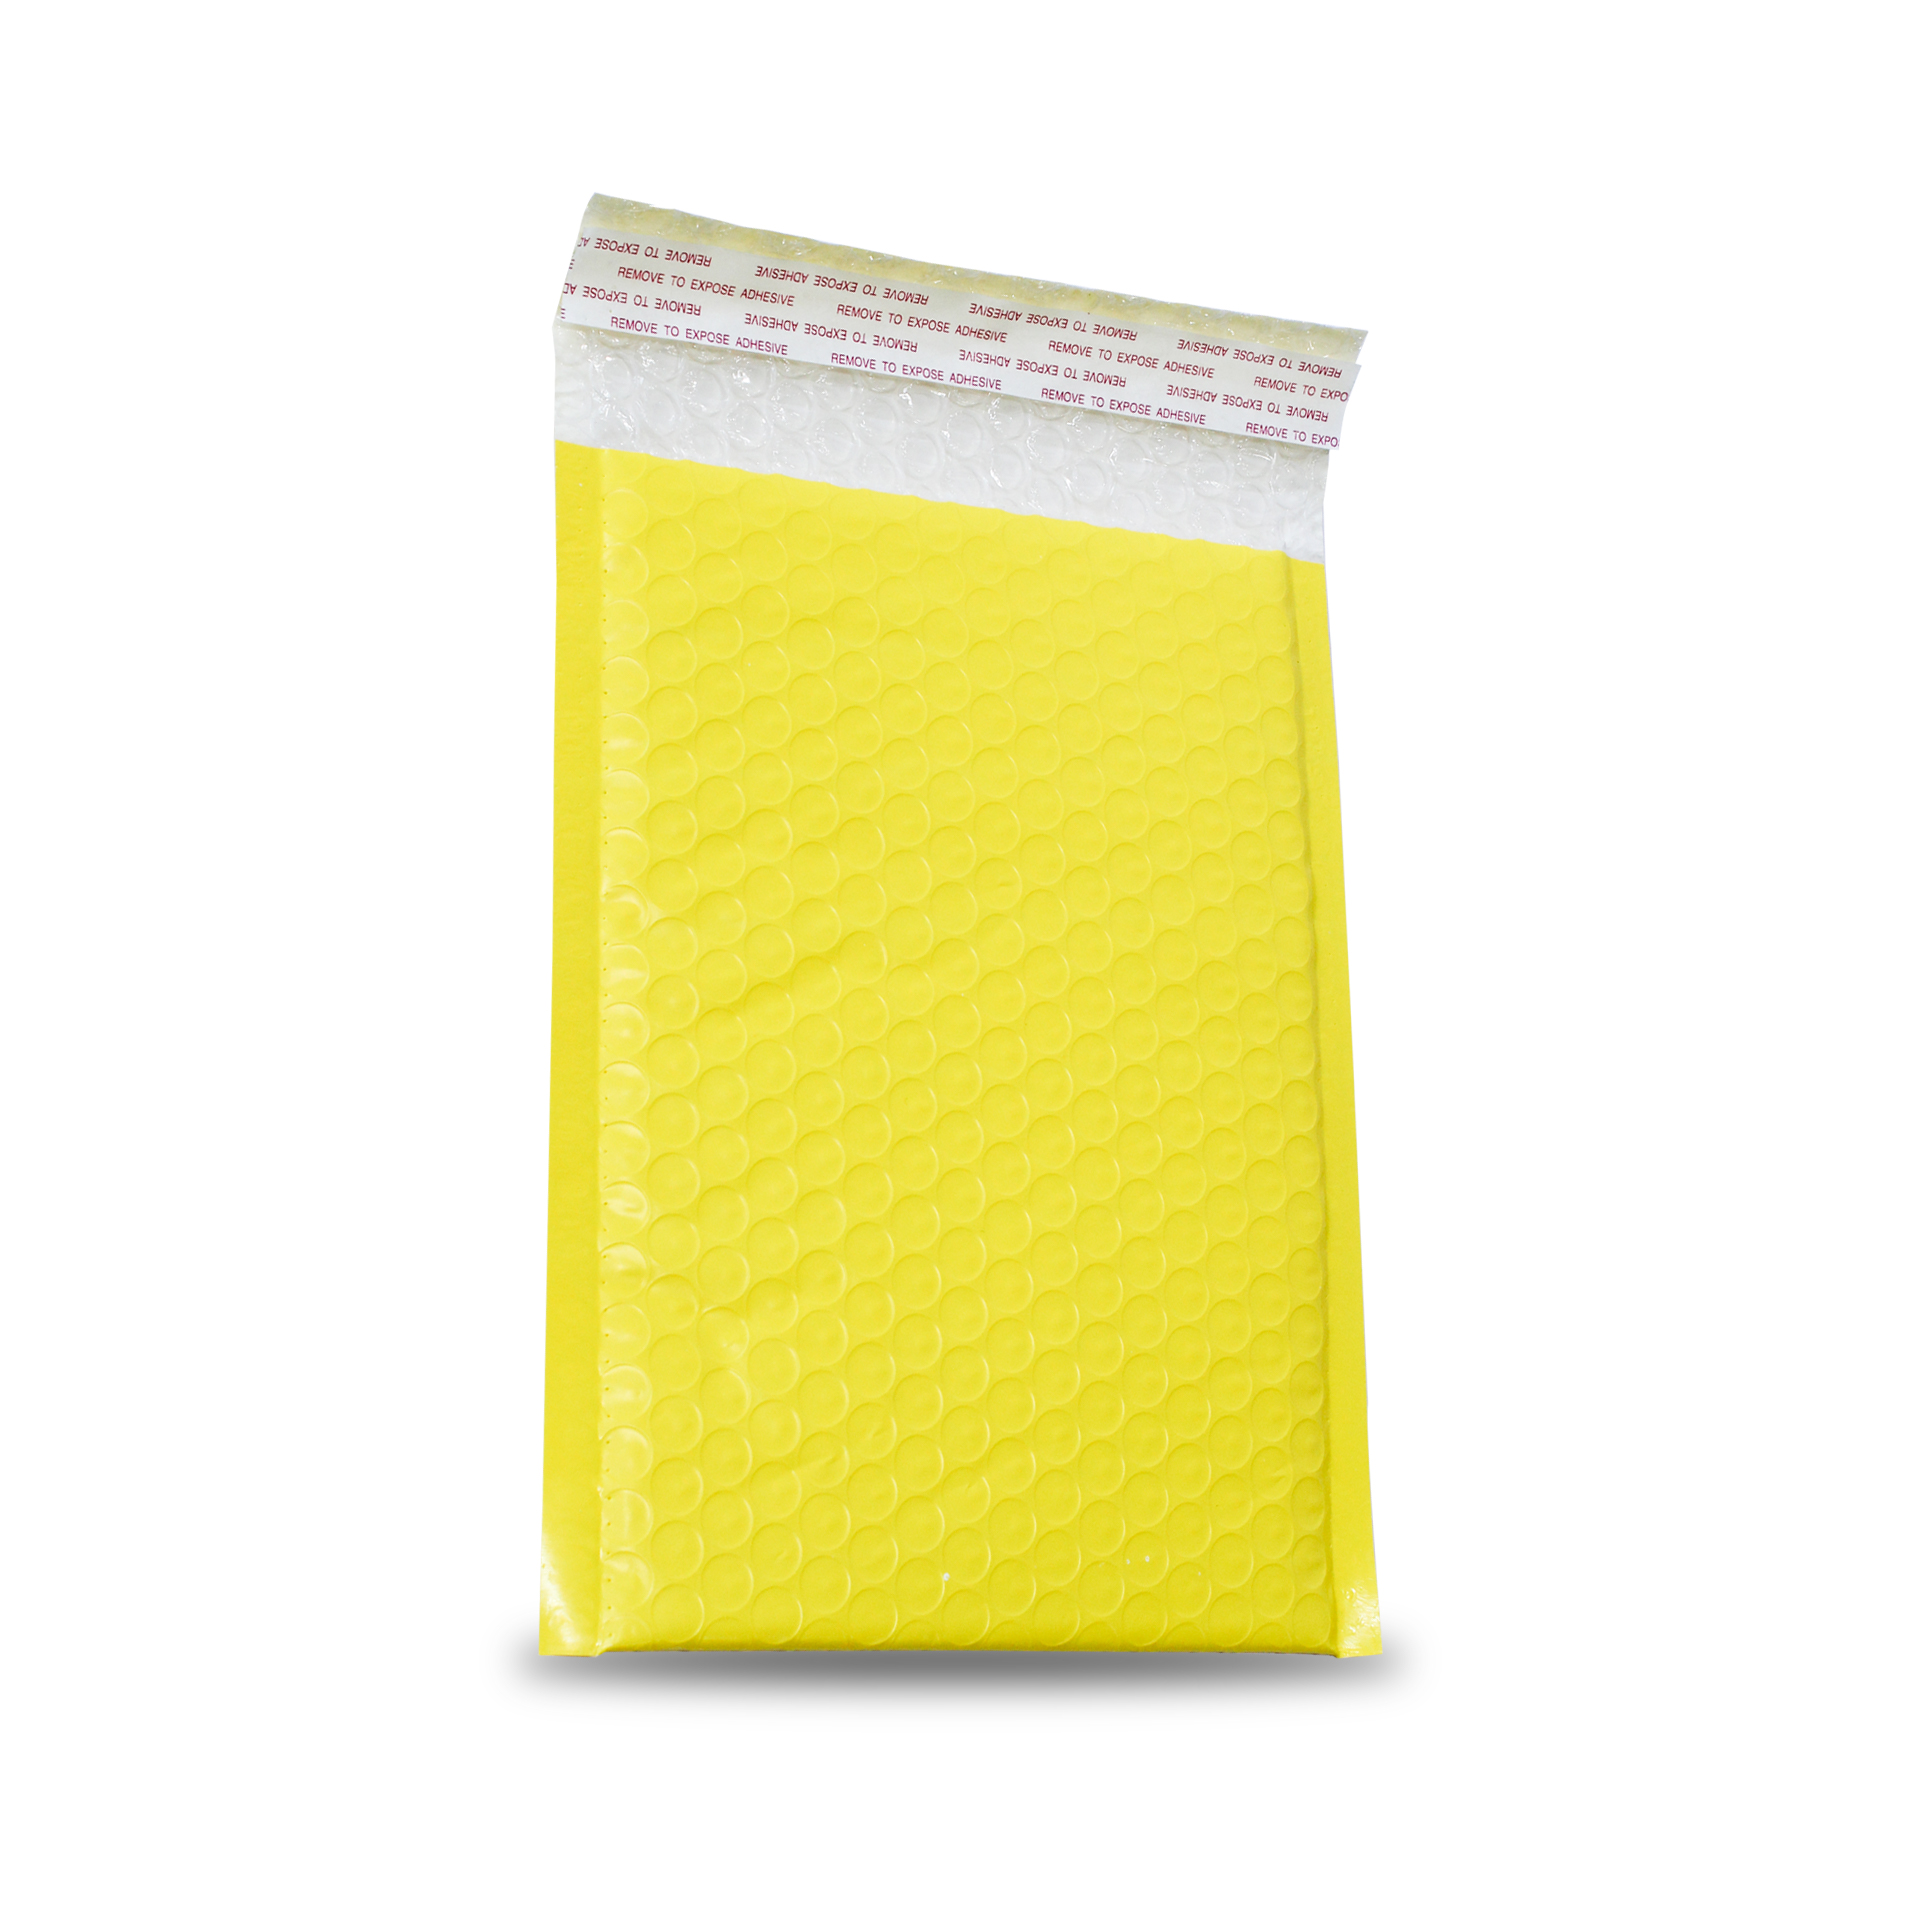 (ยิ่งซื้อ ยิ่งแถม) ซองไปรษณีย์กันกระแทก ขนาด 17.5 x 24 ซม. สีเหลือง (100 ซอง/แพ็ค)